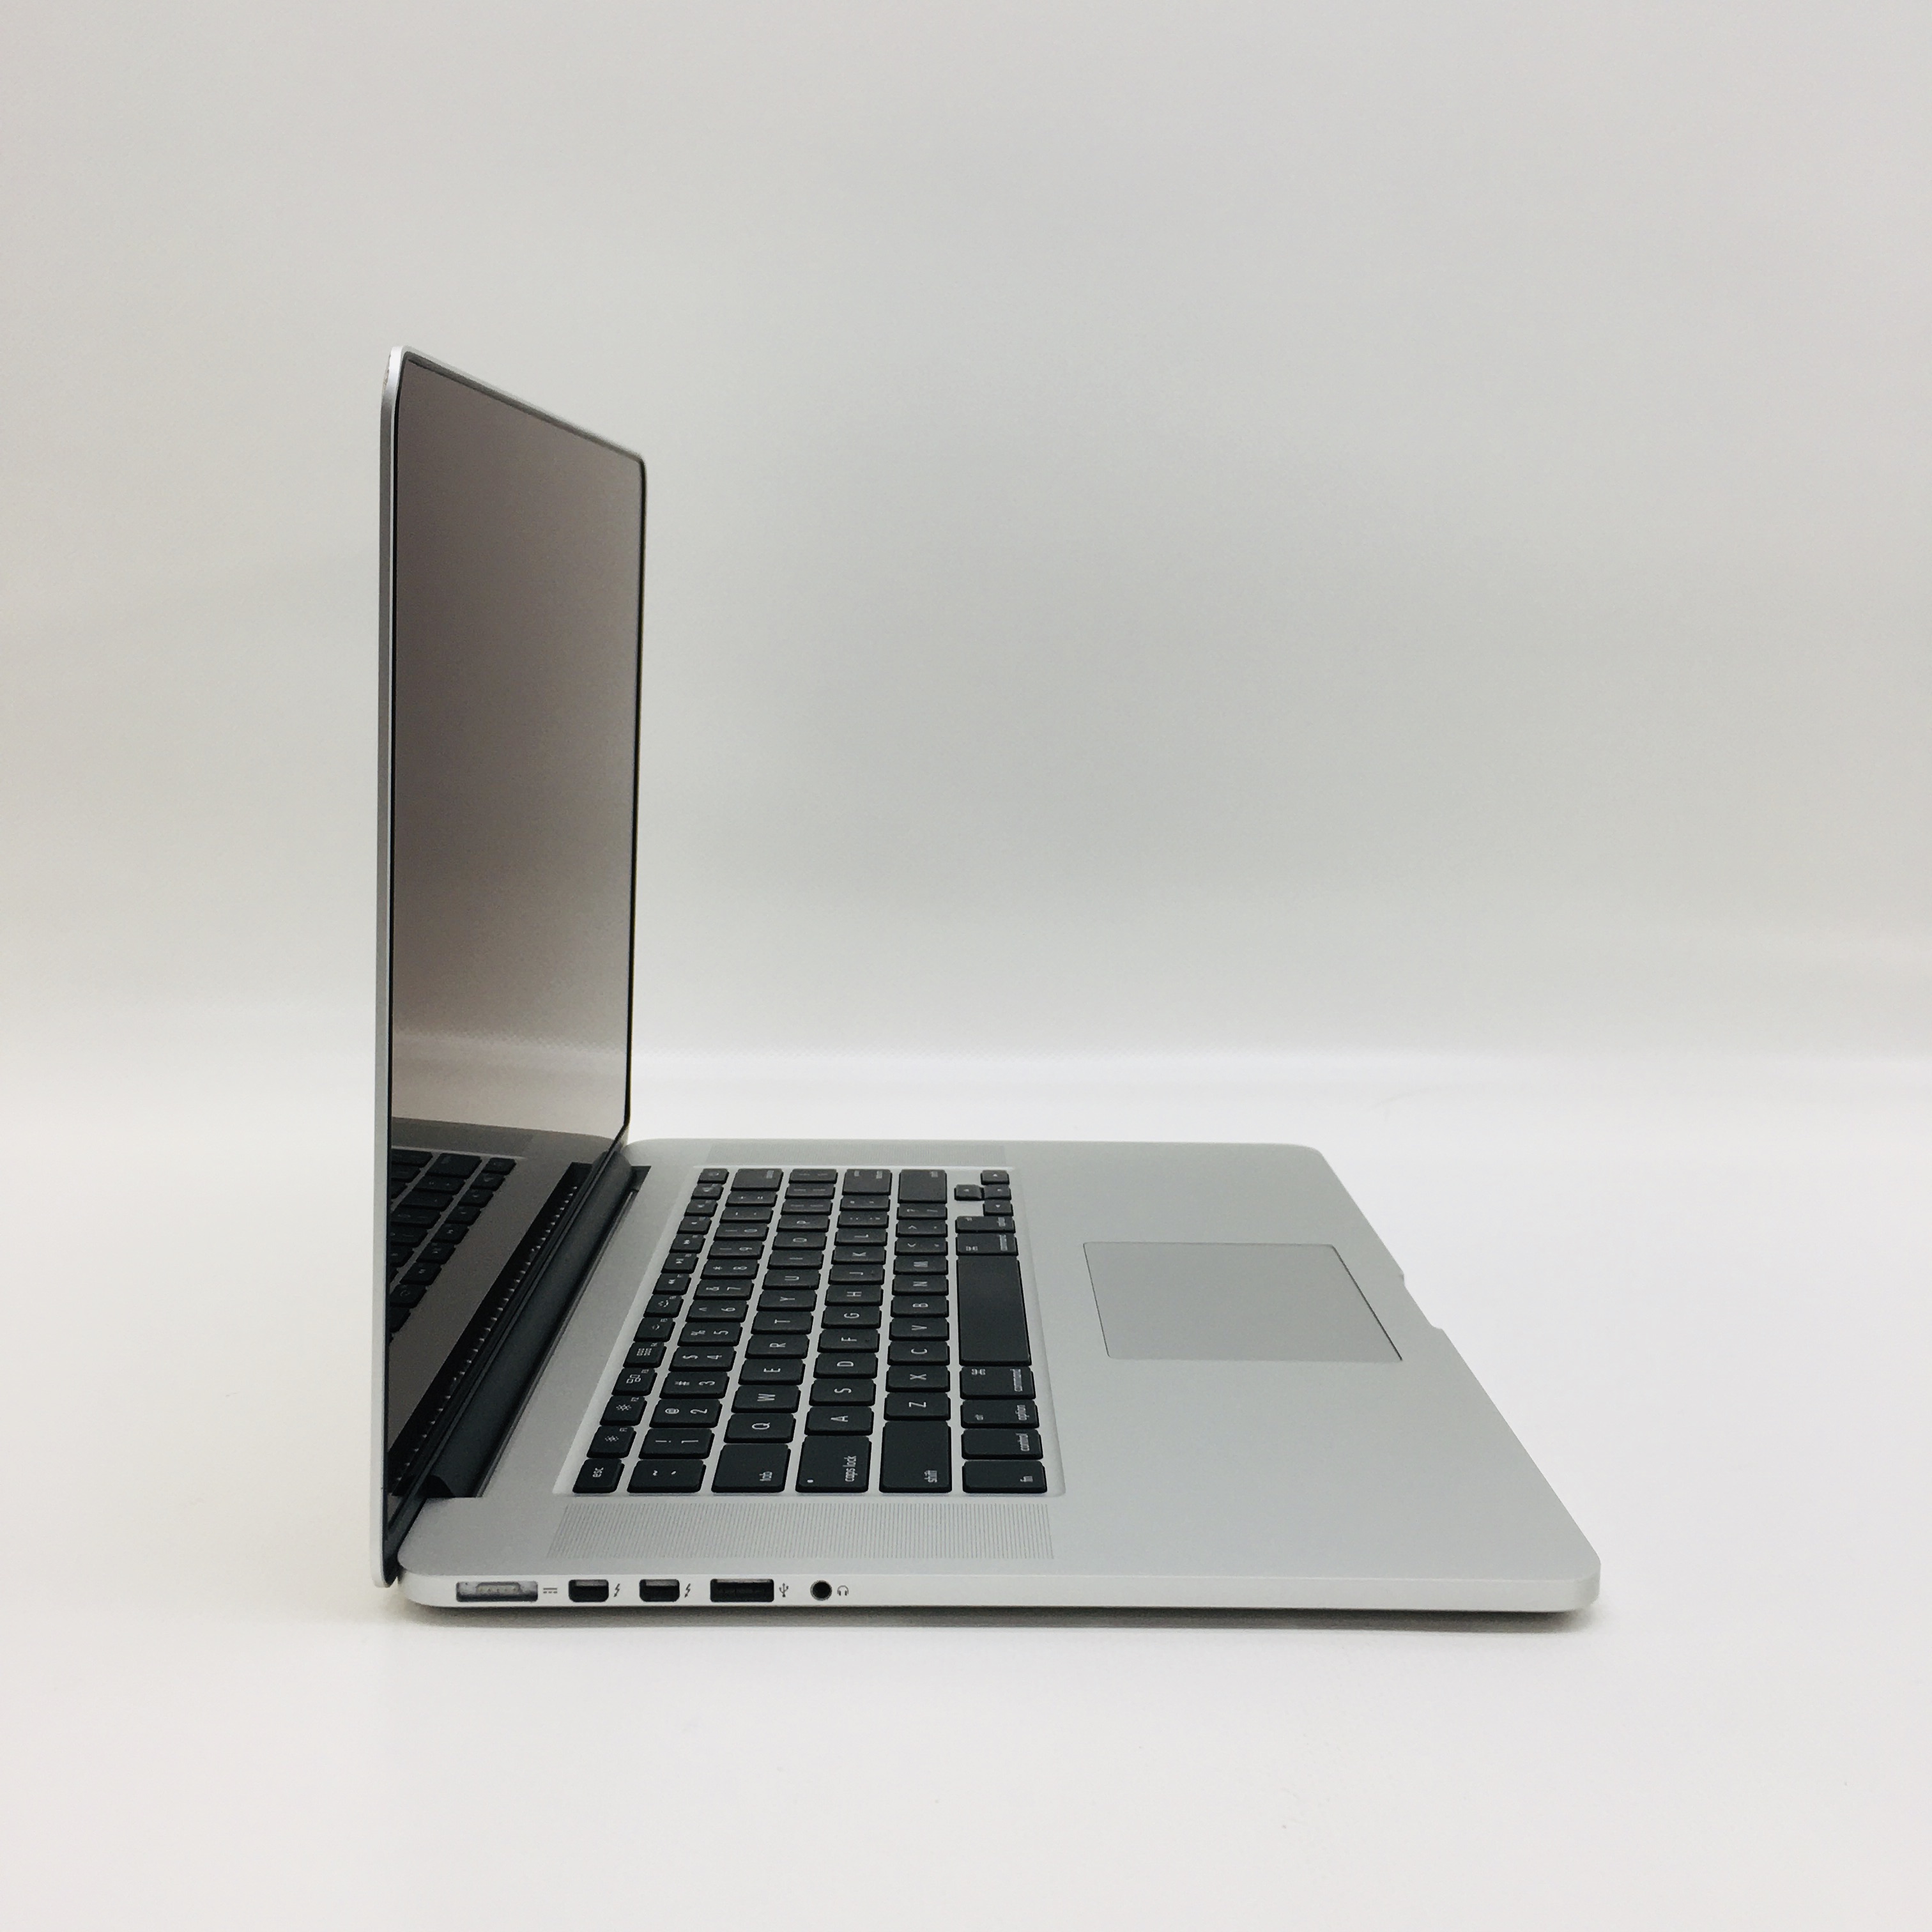 MacBook Pro Retina 15" Mid 2015 (Intel Quad-Core i7 2.5 GHz 16 GB RAM 1 TB SSD), Intel Quad-Core i7 2.5 GHz, 16 GB RAM, 1 TB SSD, image 2